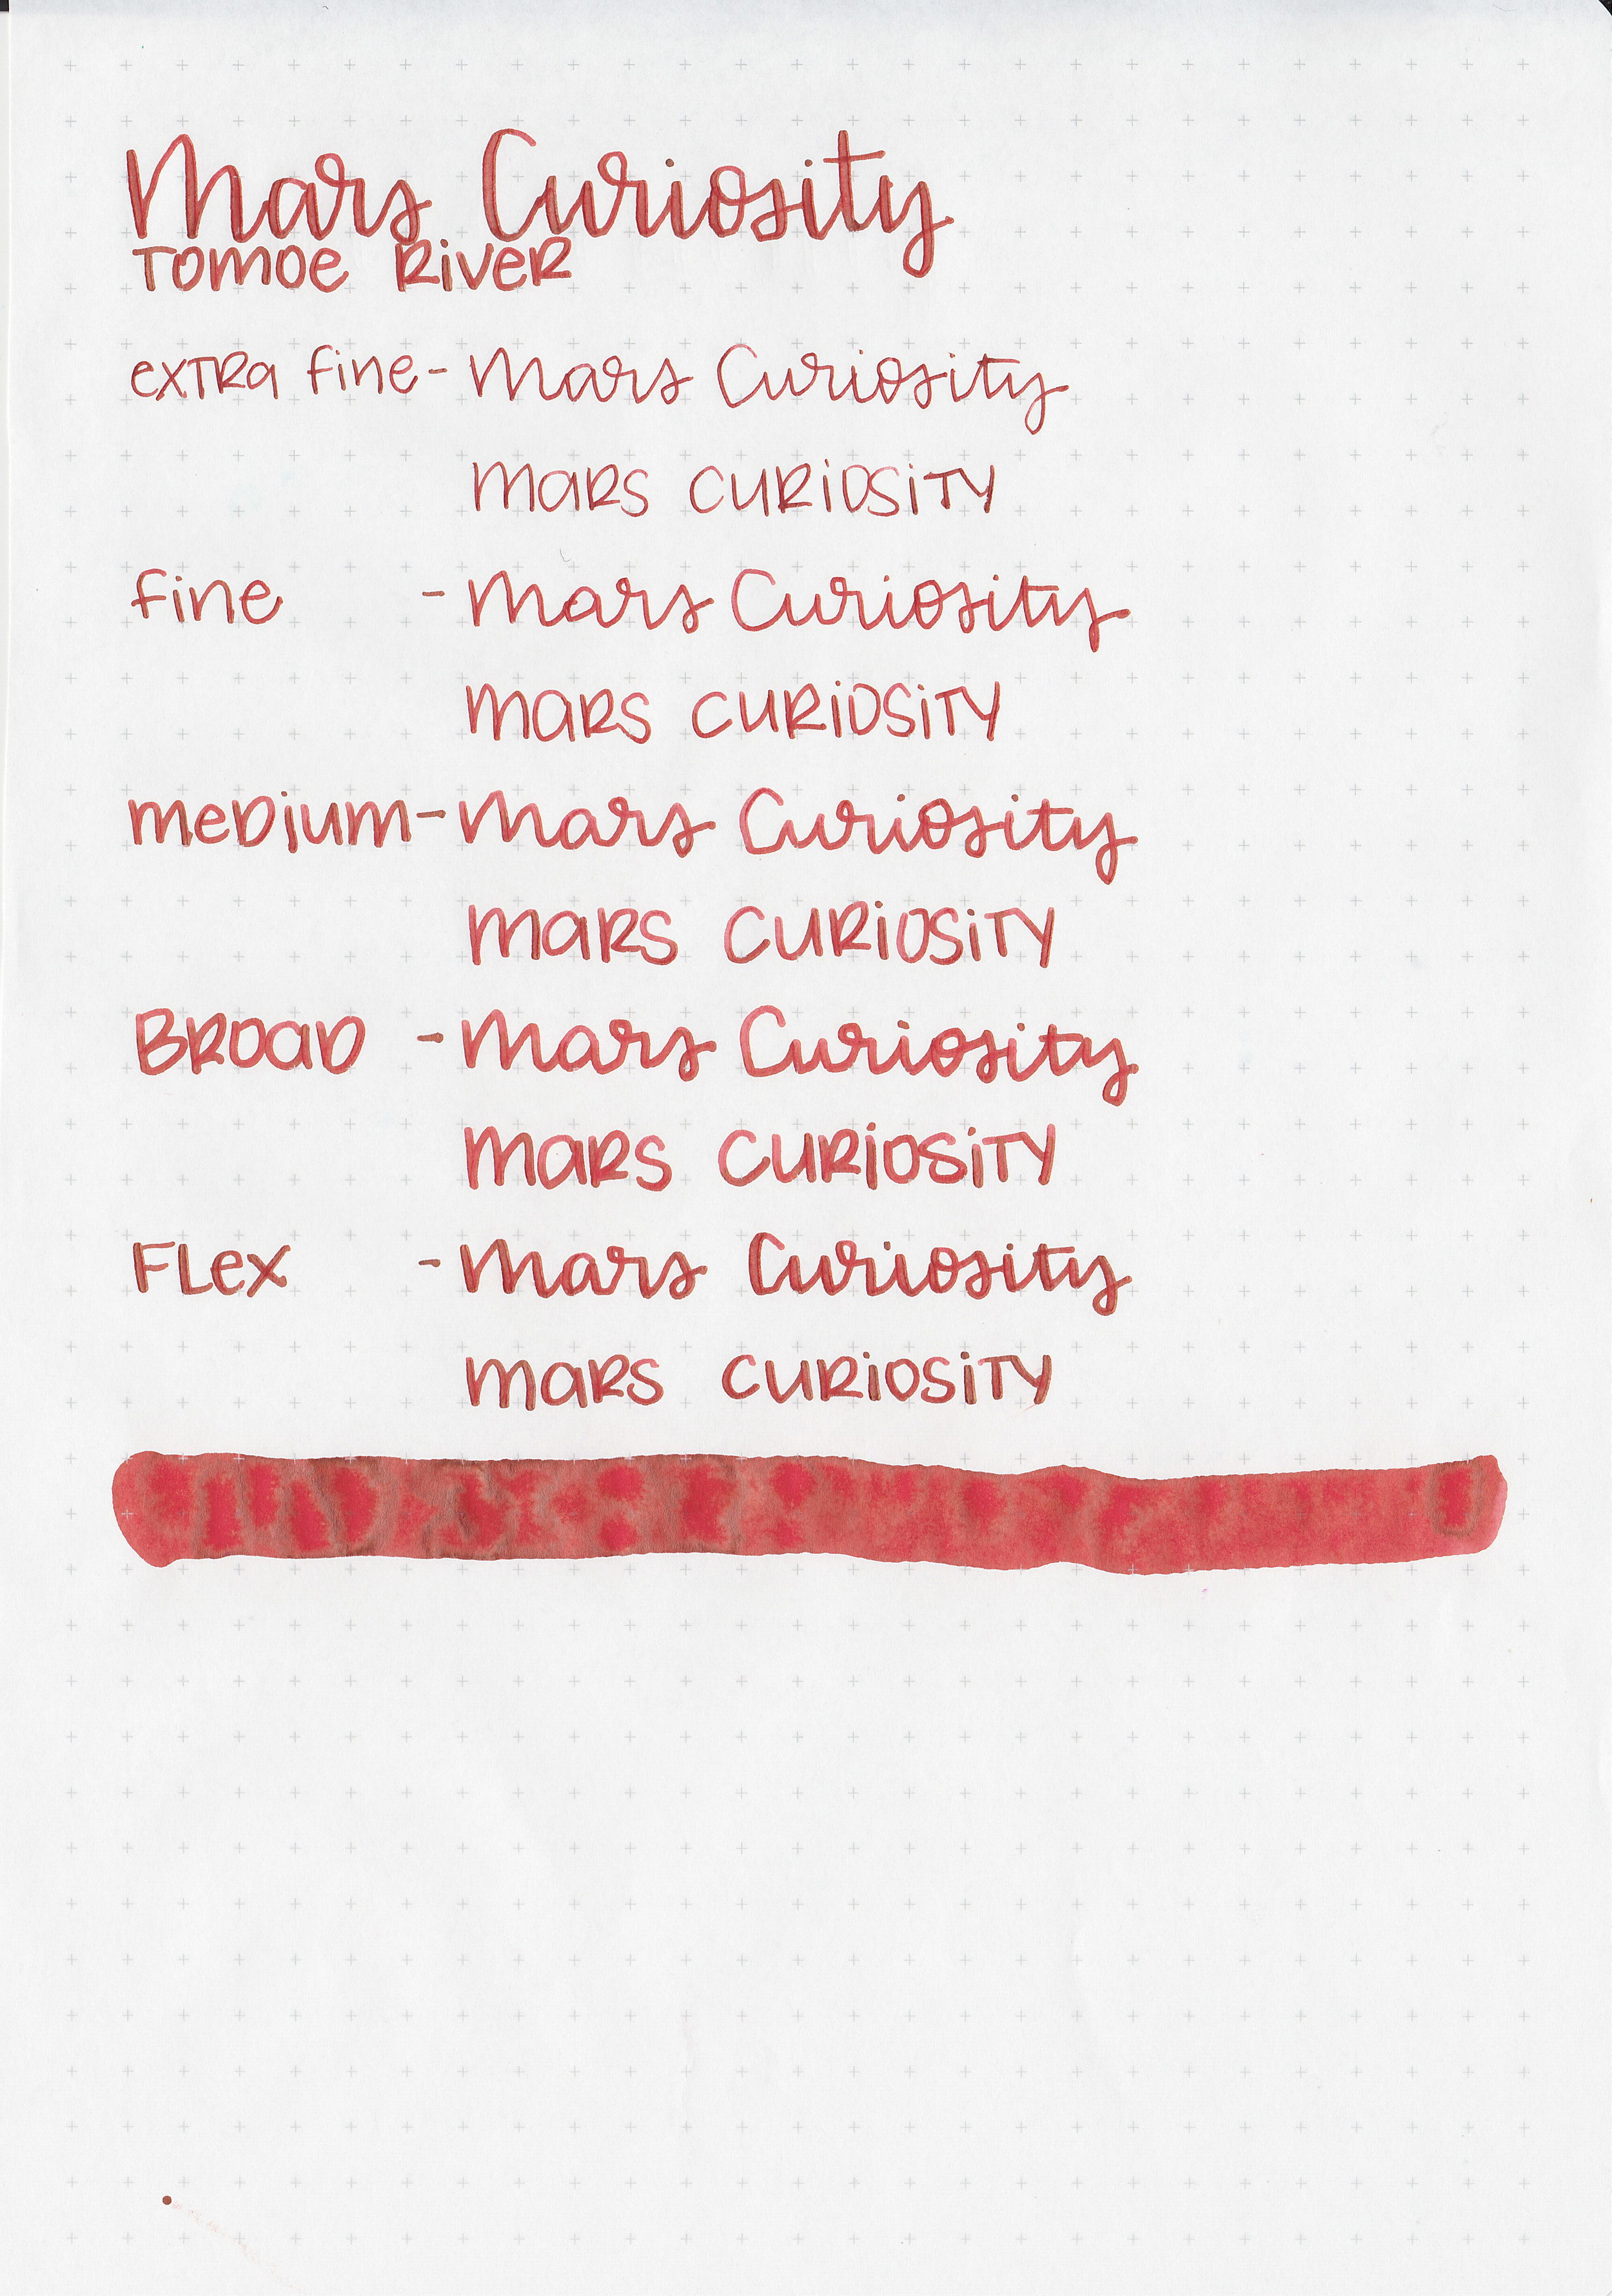 cv-mars-curiosity-8.jpg